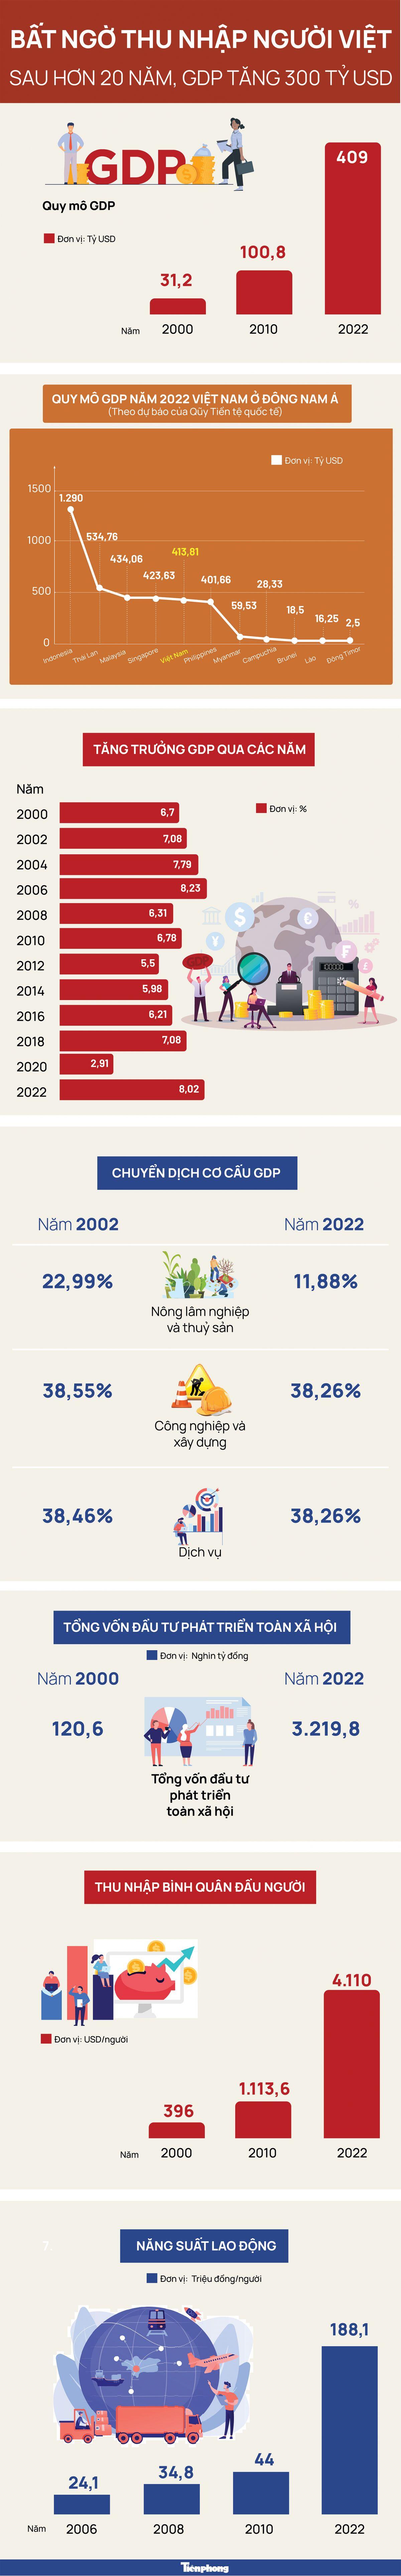 Bất ngờ thu nhập người Việt sau hơn 20 năm GDP tăng 300 tỷ USD ảnh 1